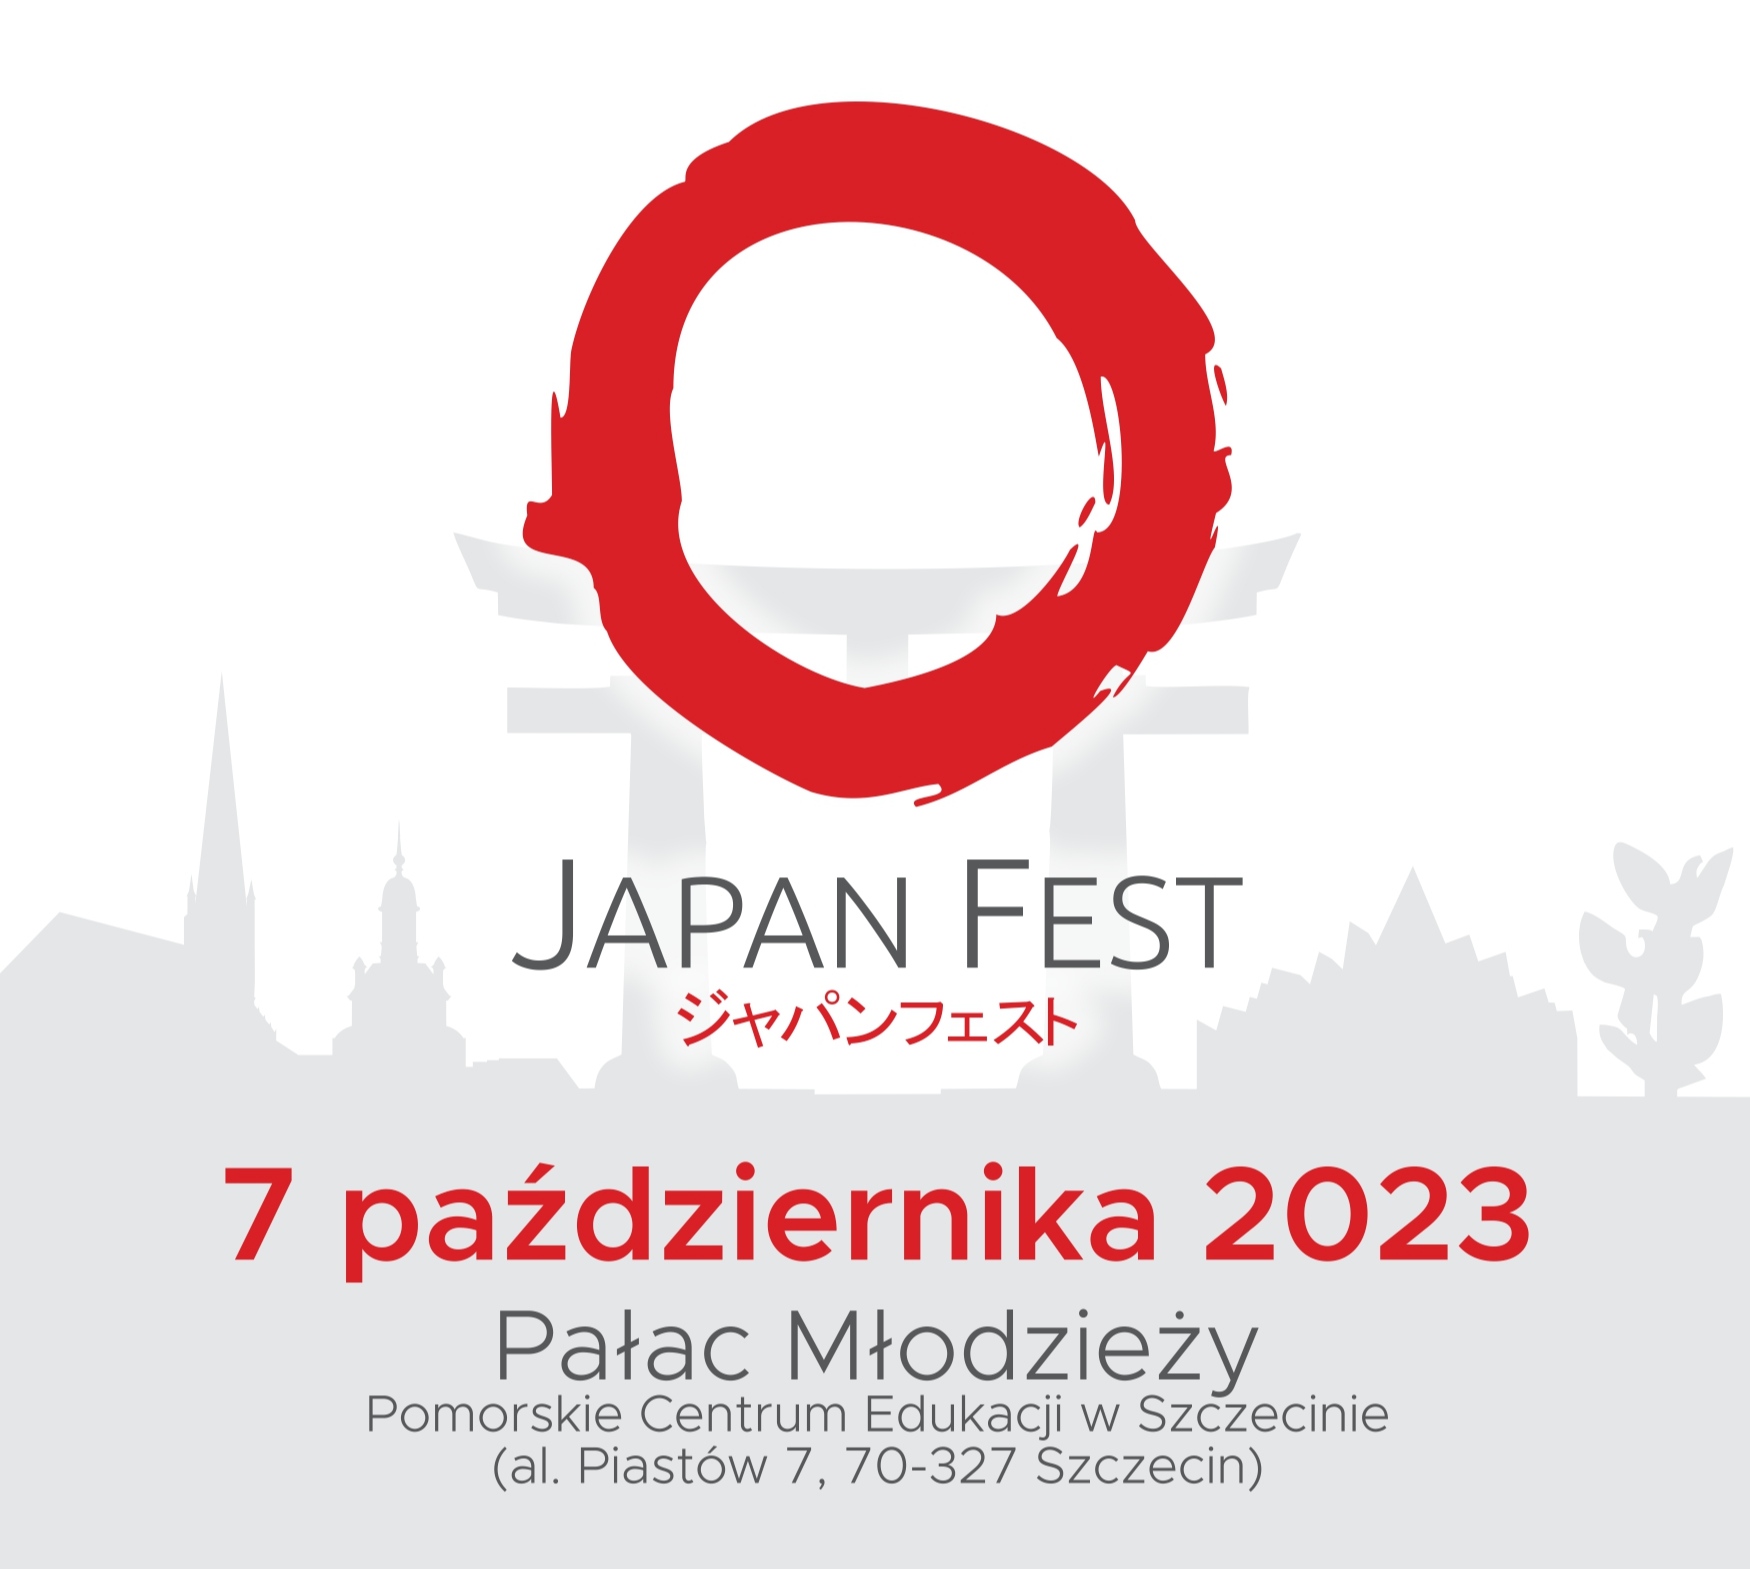 Plakat imprezy. Na białym tle czerwone koło (stylistyka symbolizująca japońską flagę). Poniżej napis Japan Fest (także po japońsku) oraz miejsce i termin imprezy (dostępne w informacji poniżej)  